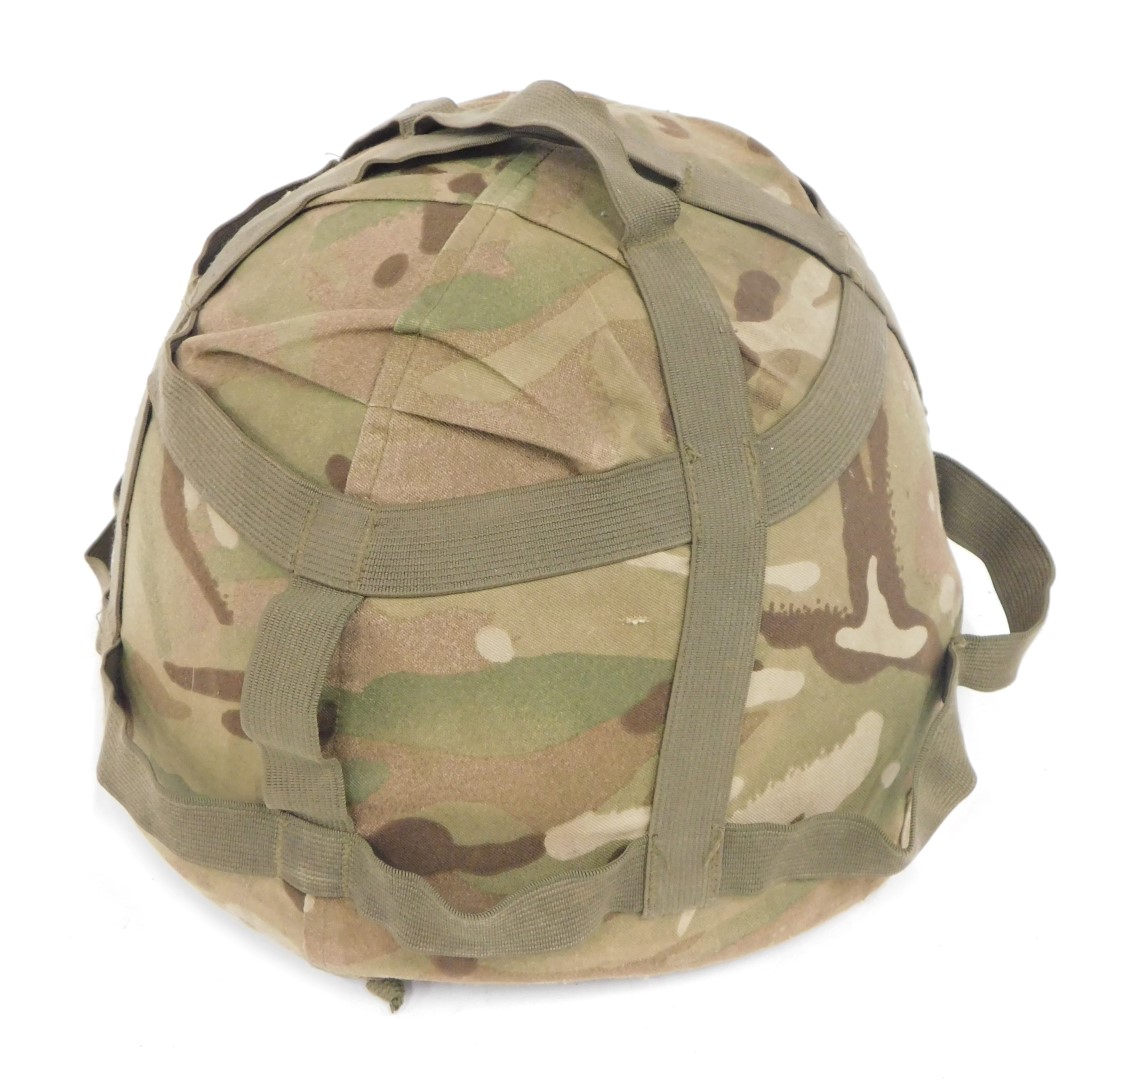 A Mk 6 Army Kevlar camouflaged helmet.